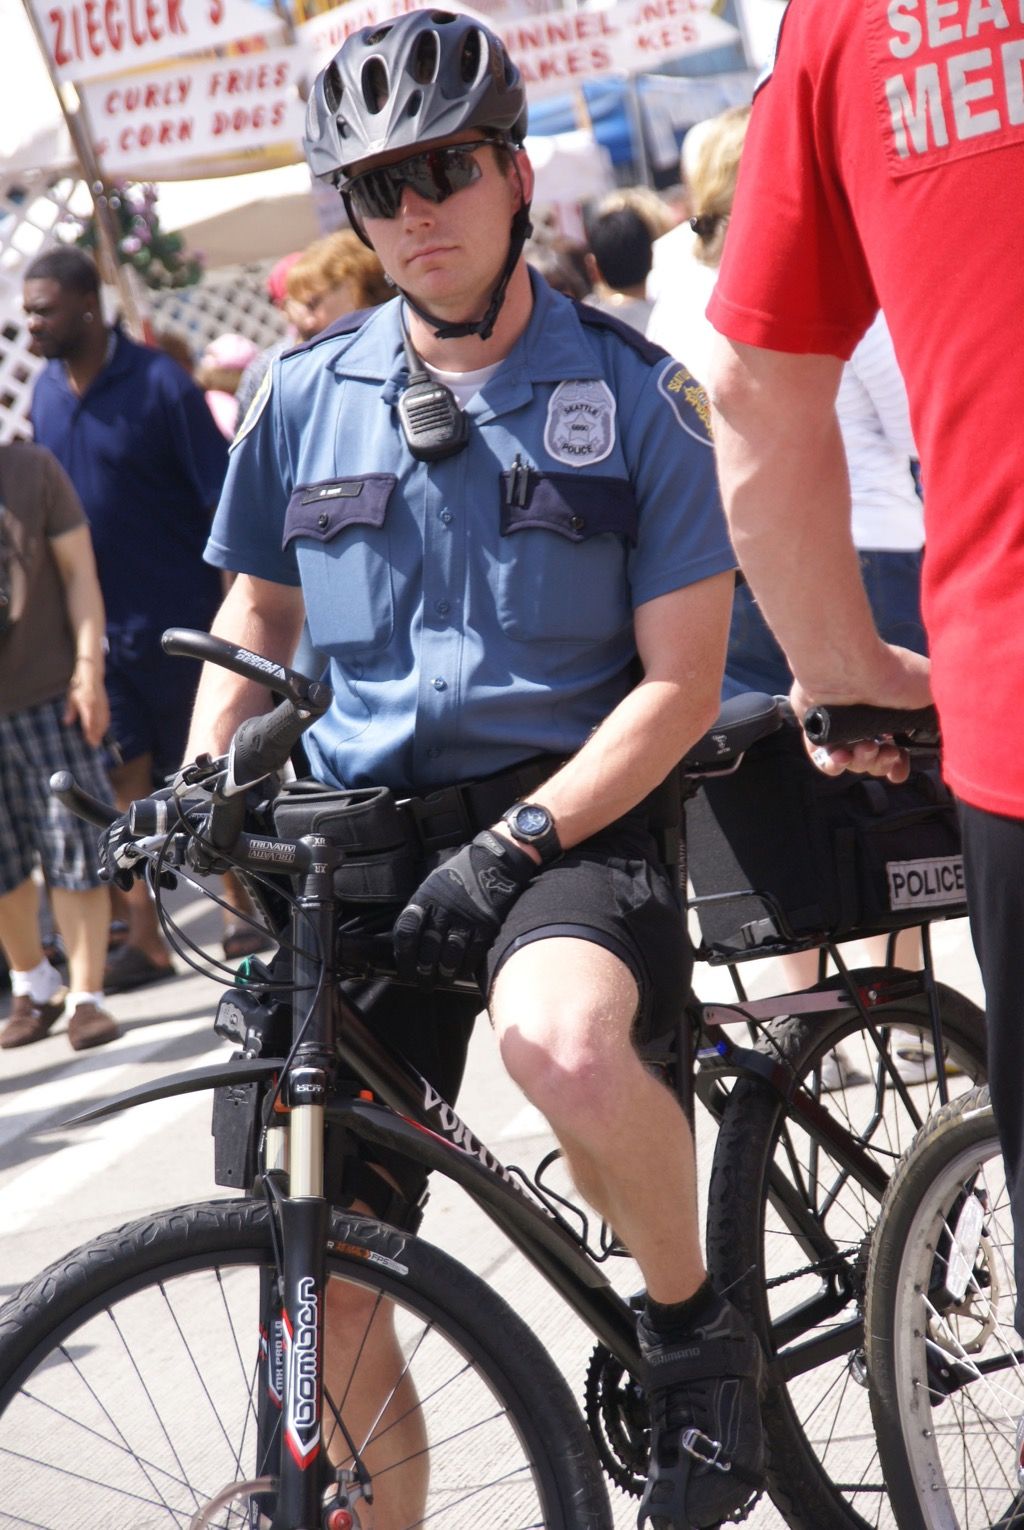 Politieagent op een fiets